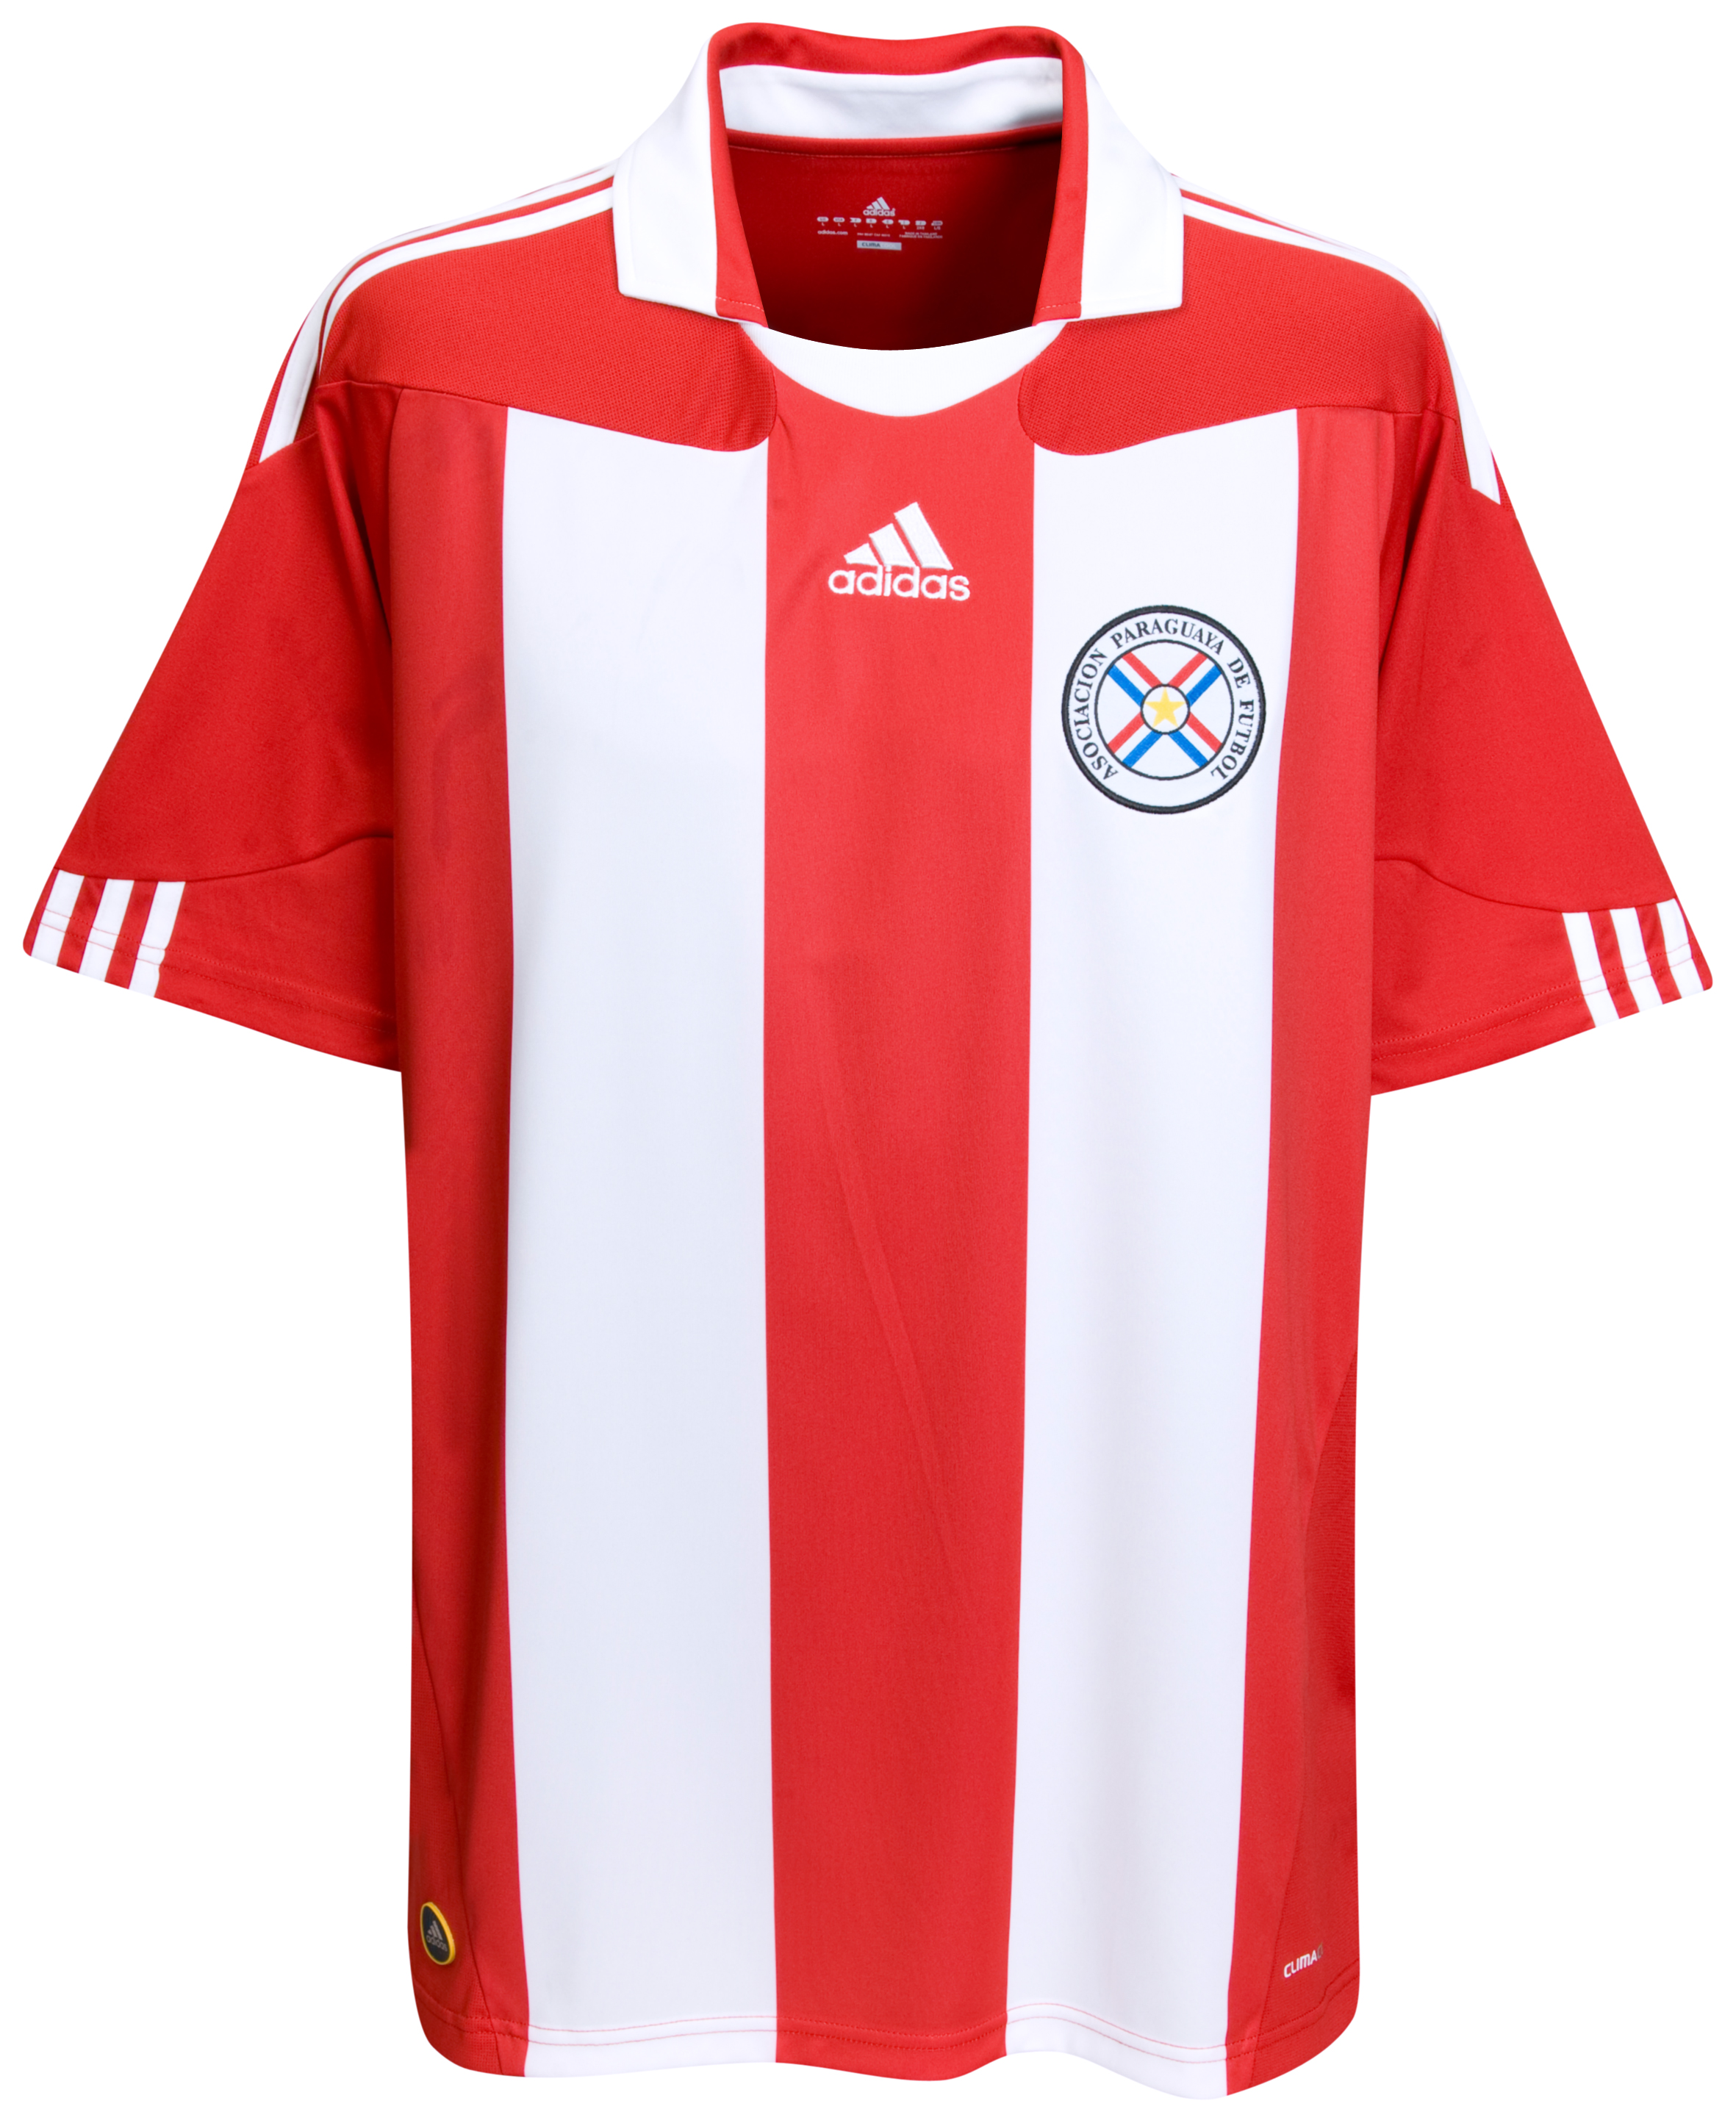 الملابس الرسمية لكأس العالم 2010 Kb-63747